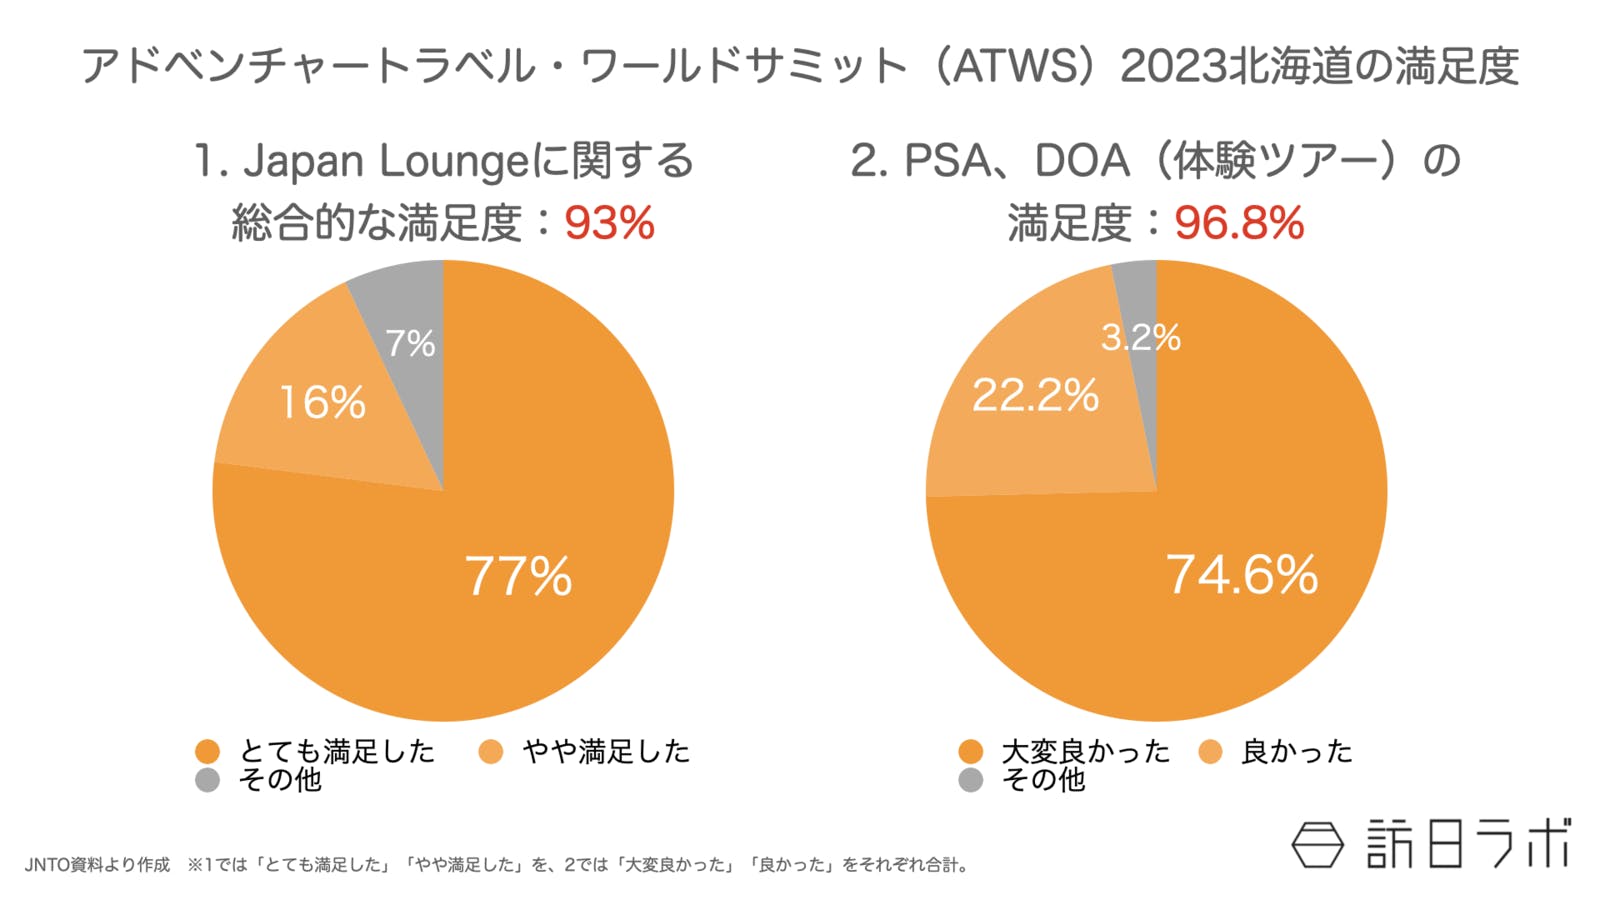 ATWSの満足度は、Japan Loungeの総合的な満足度、PSA・DOAへの満足度いずれも90%超えとなった